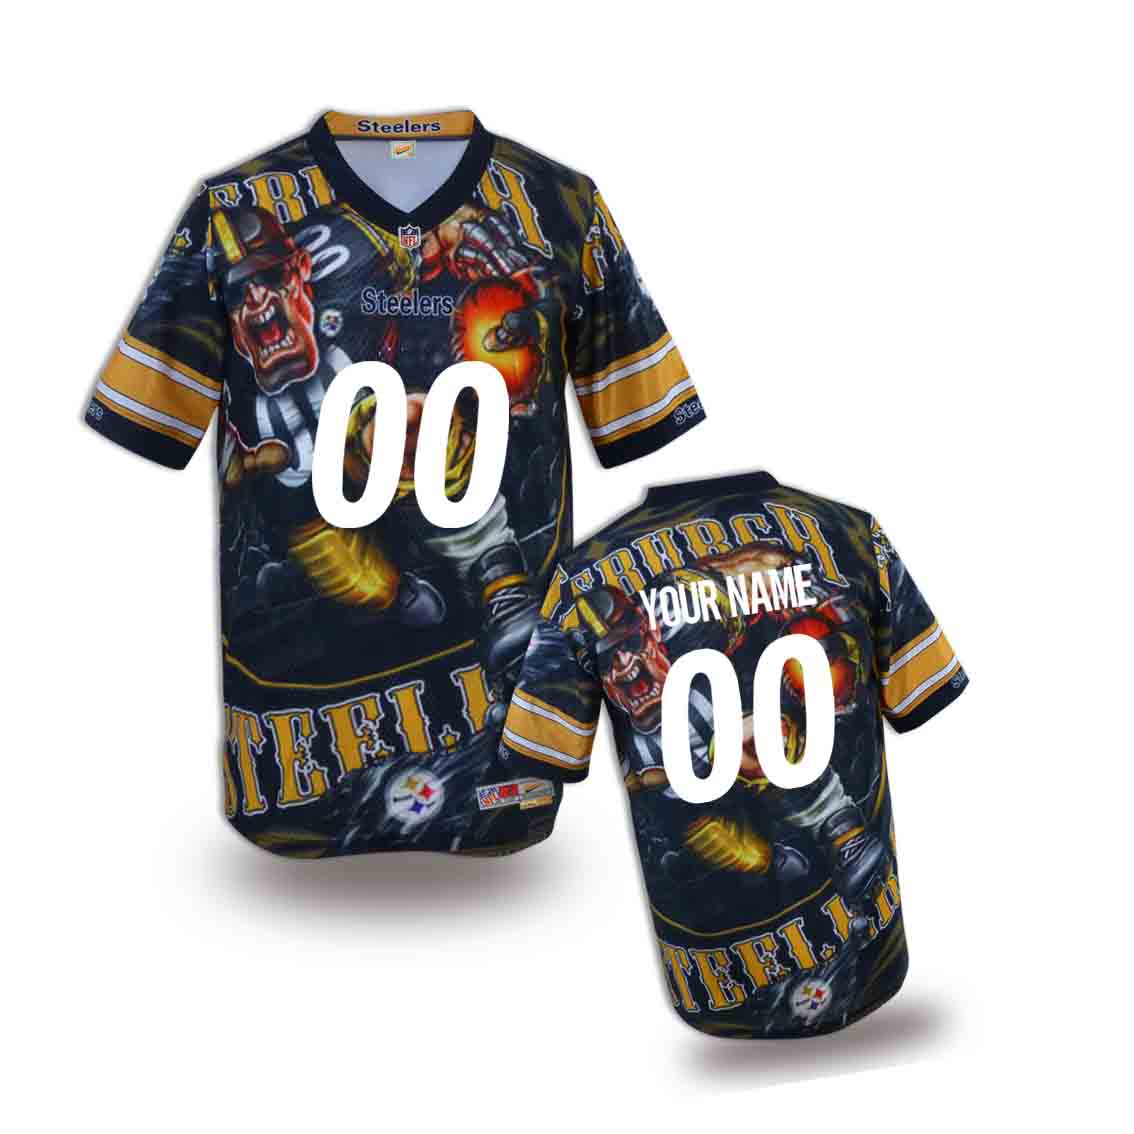 Nike Steelers Customized Fashion Stitched Youth Jerseys01